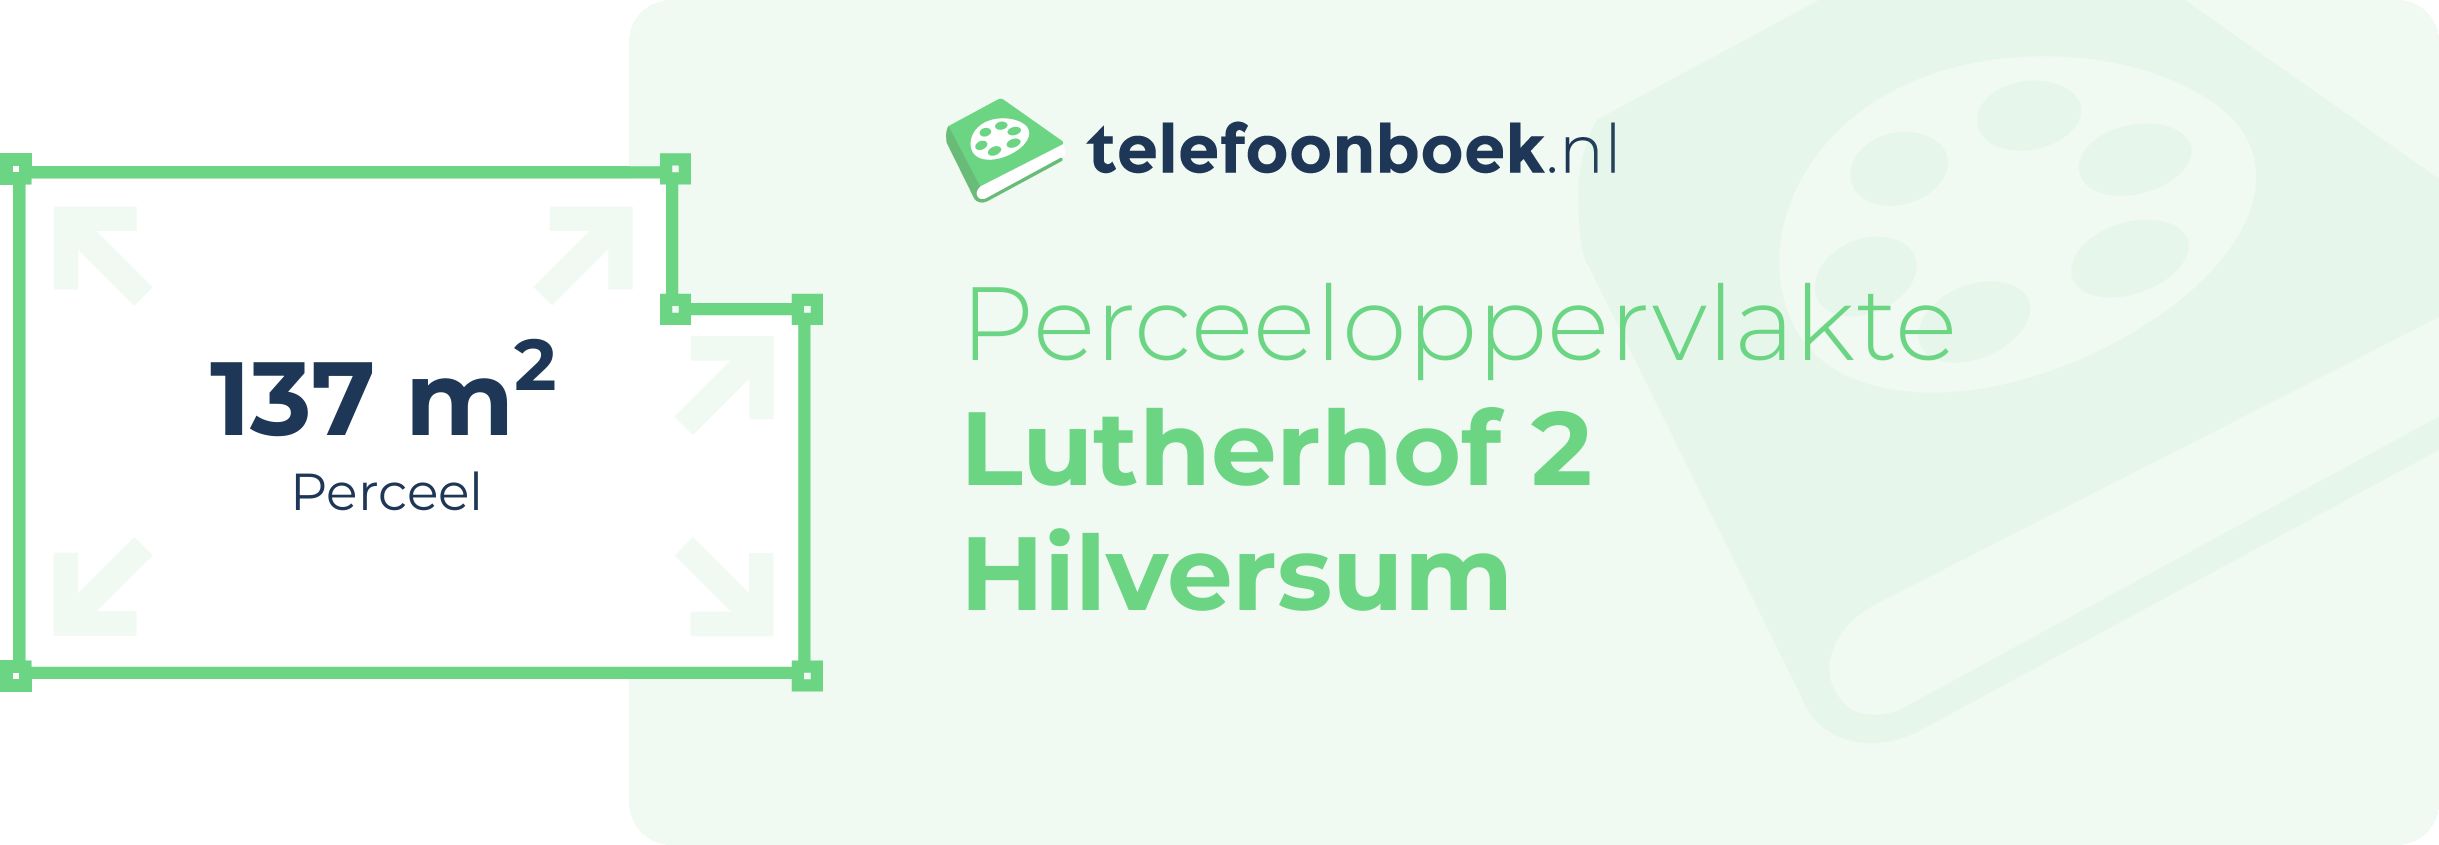 Perceeloppervlakte Lutherhof 2 Hilversum